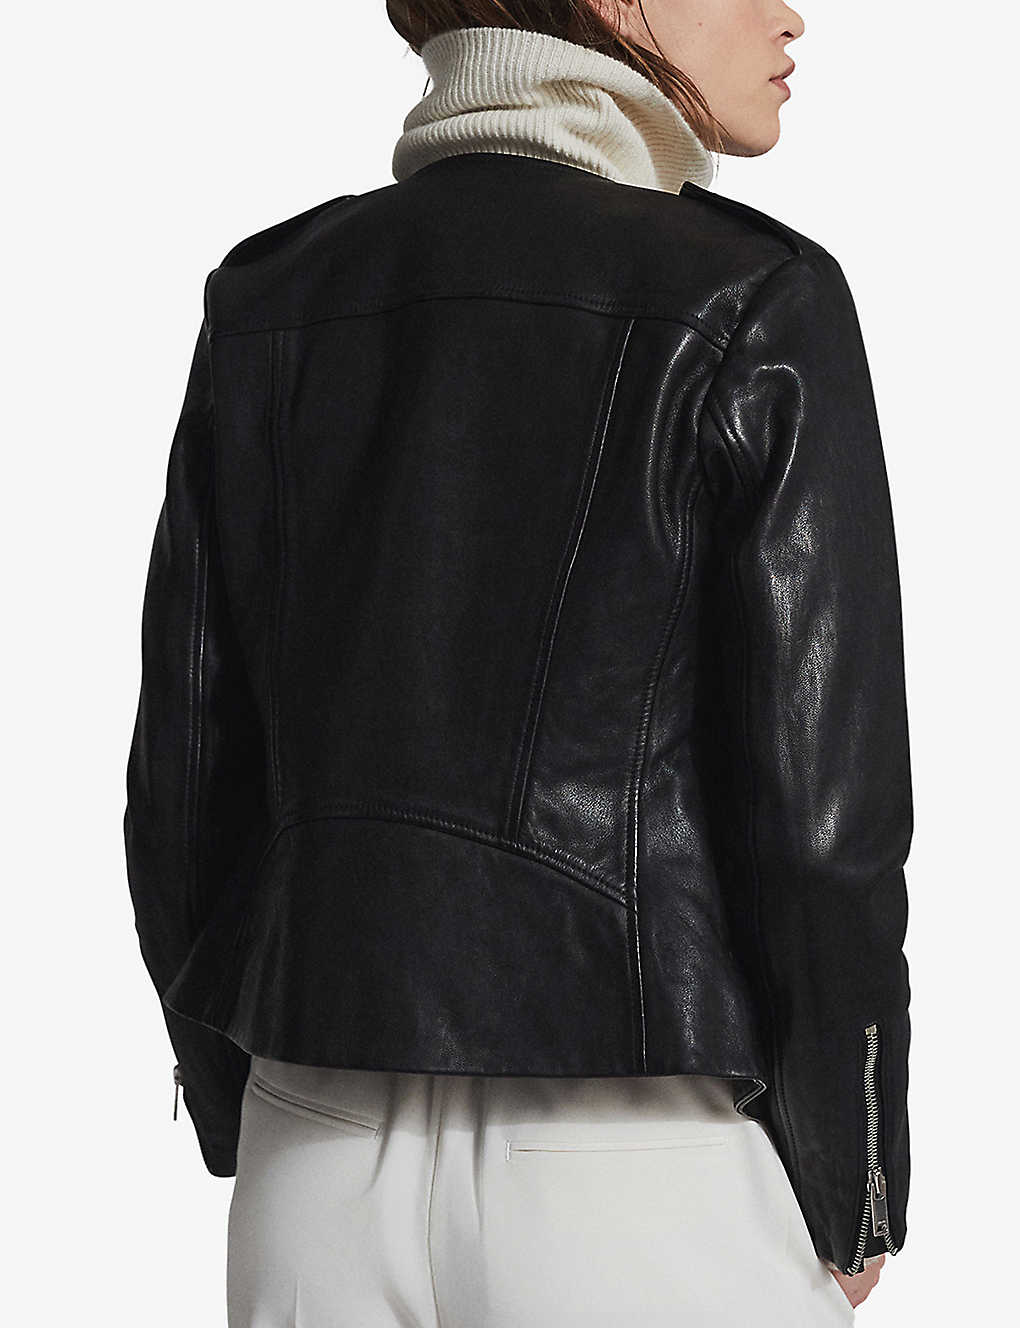 Women’s Crew Neck Black Leather Jacket